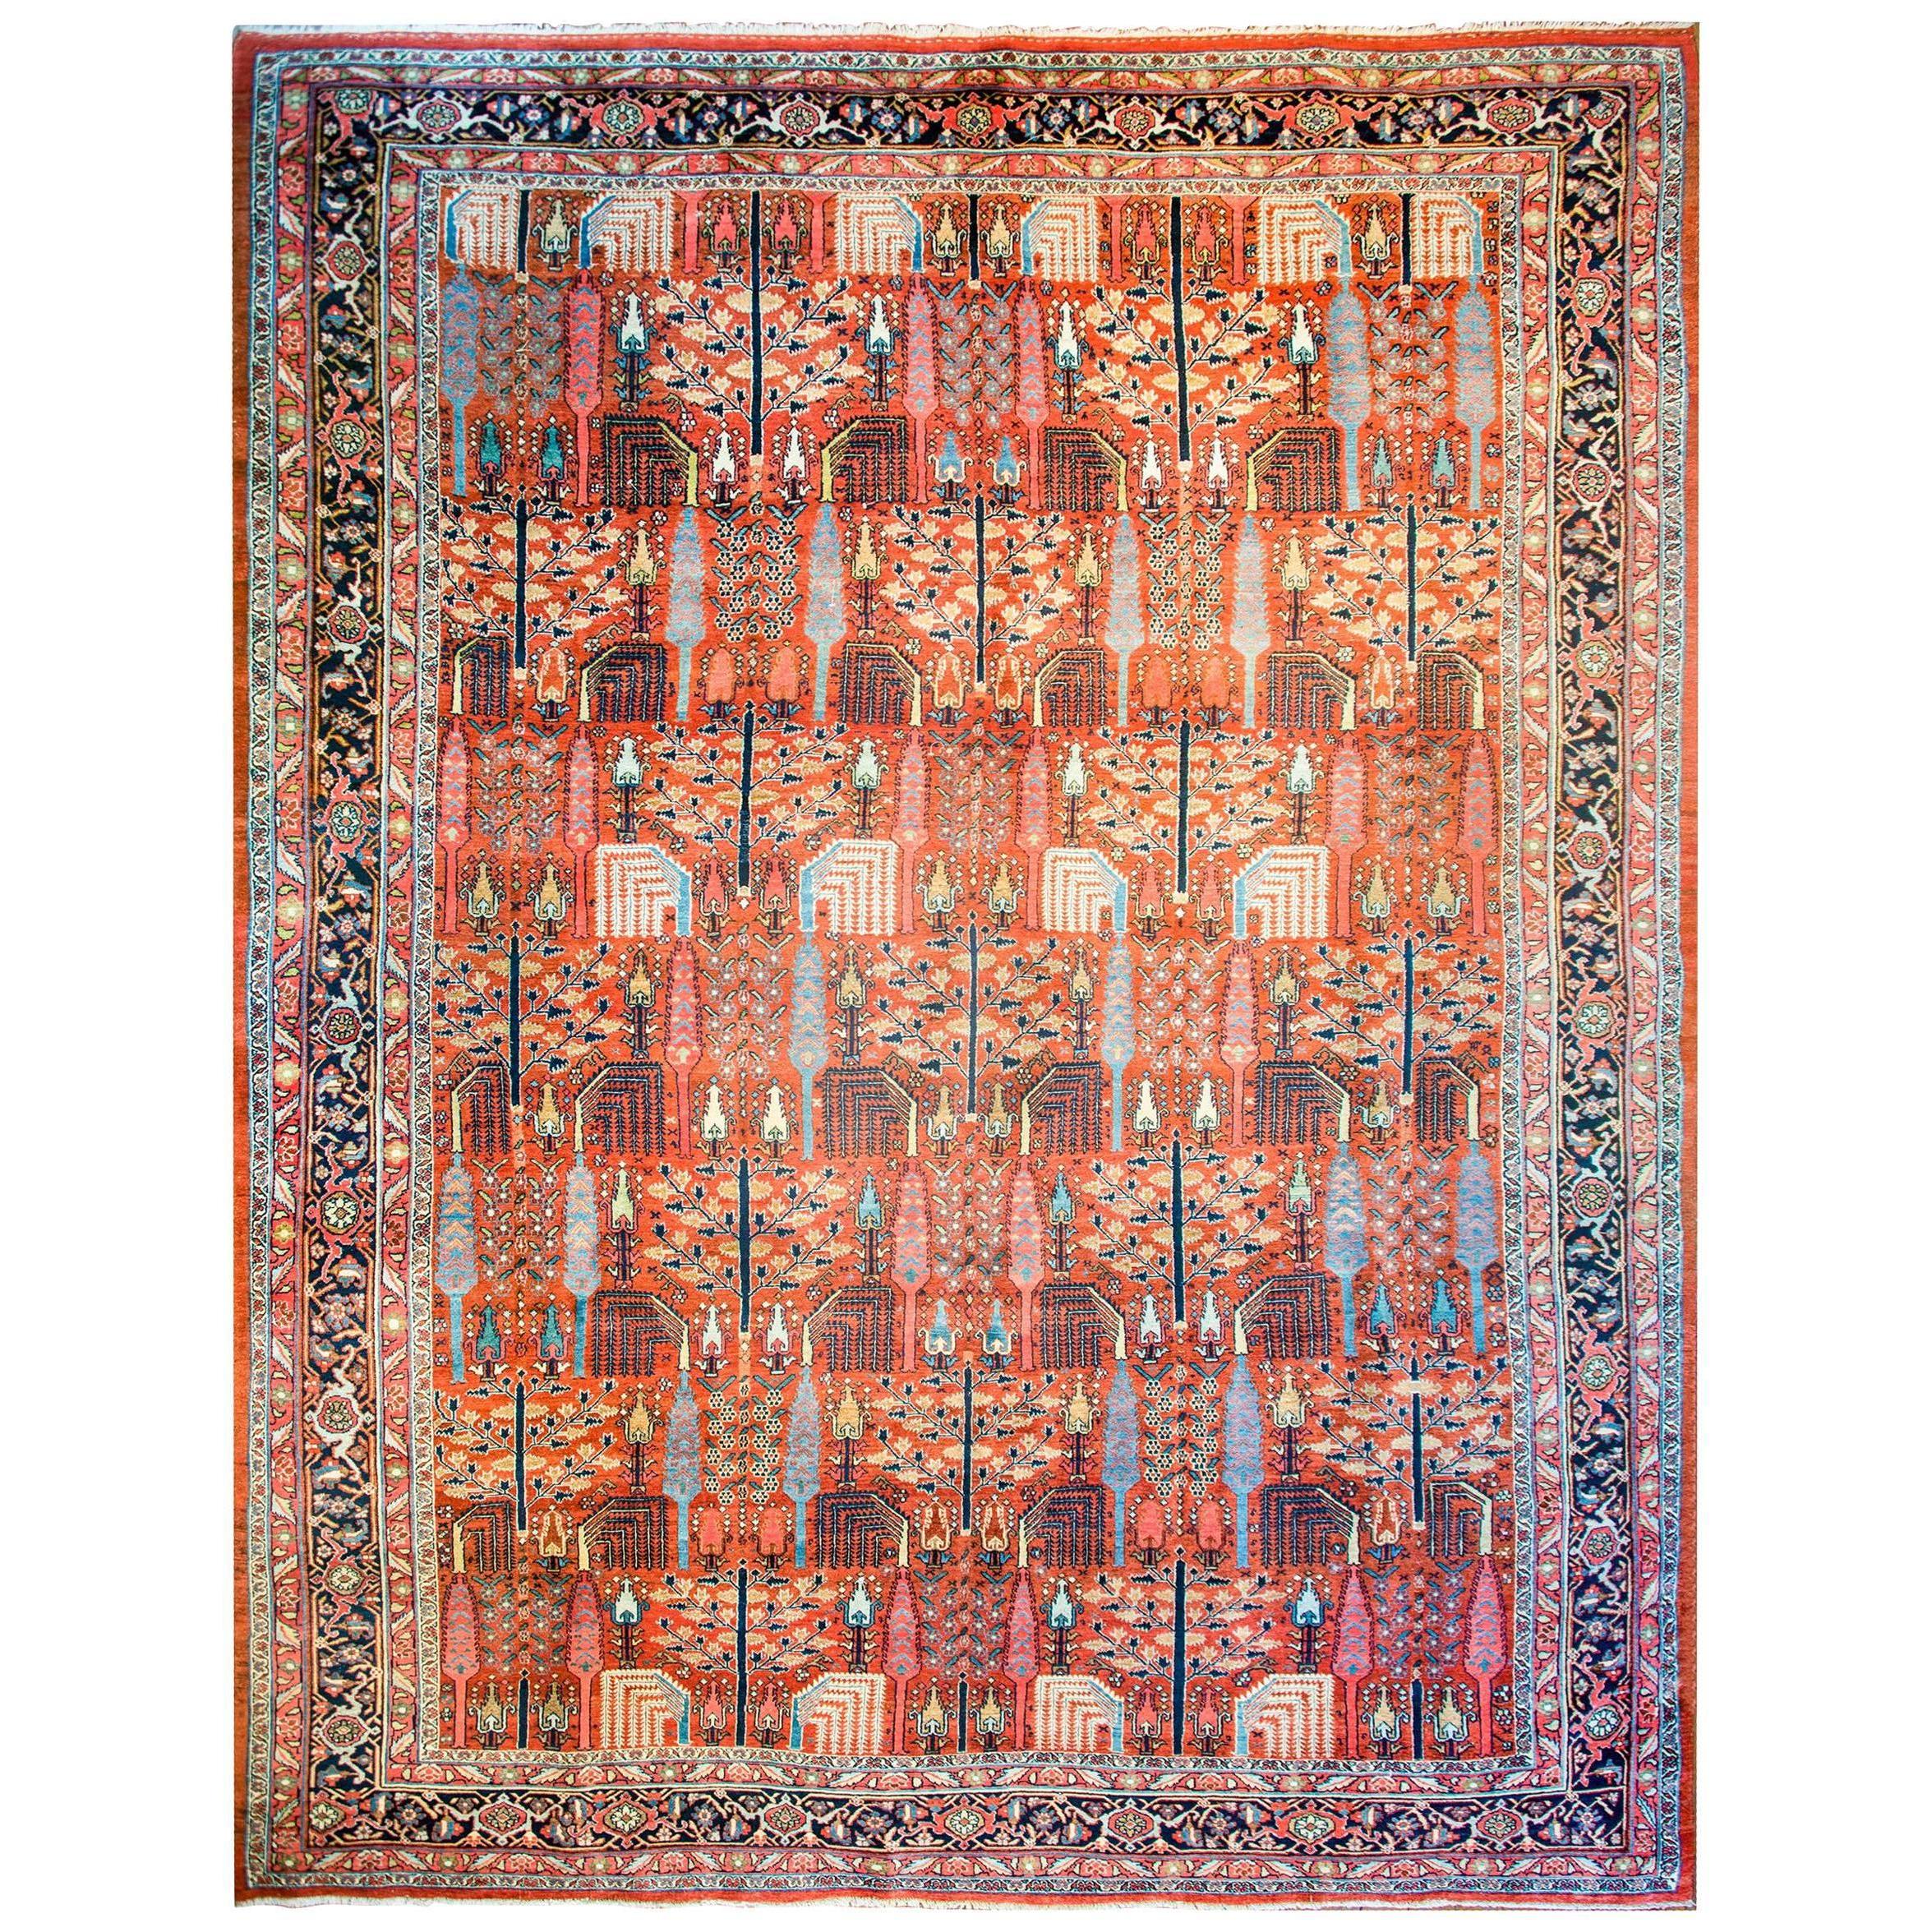 Bidjar-Teppich des frühen 20. Jahrhunderts, atemberaubend